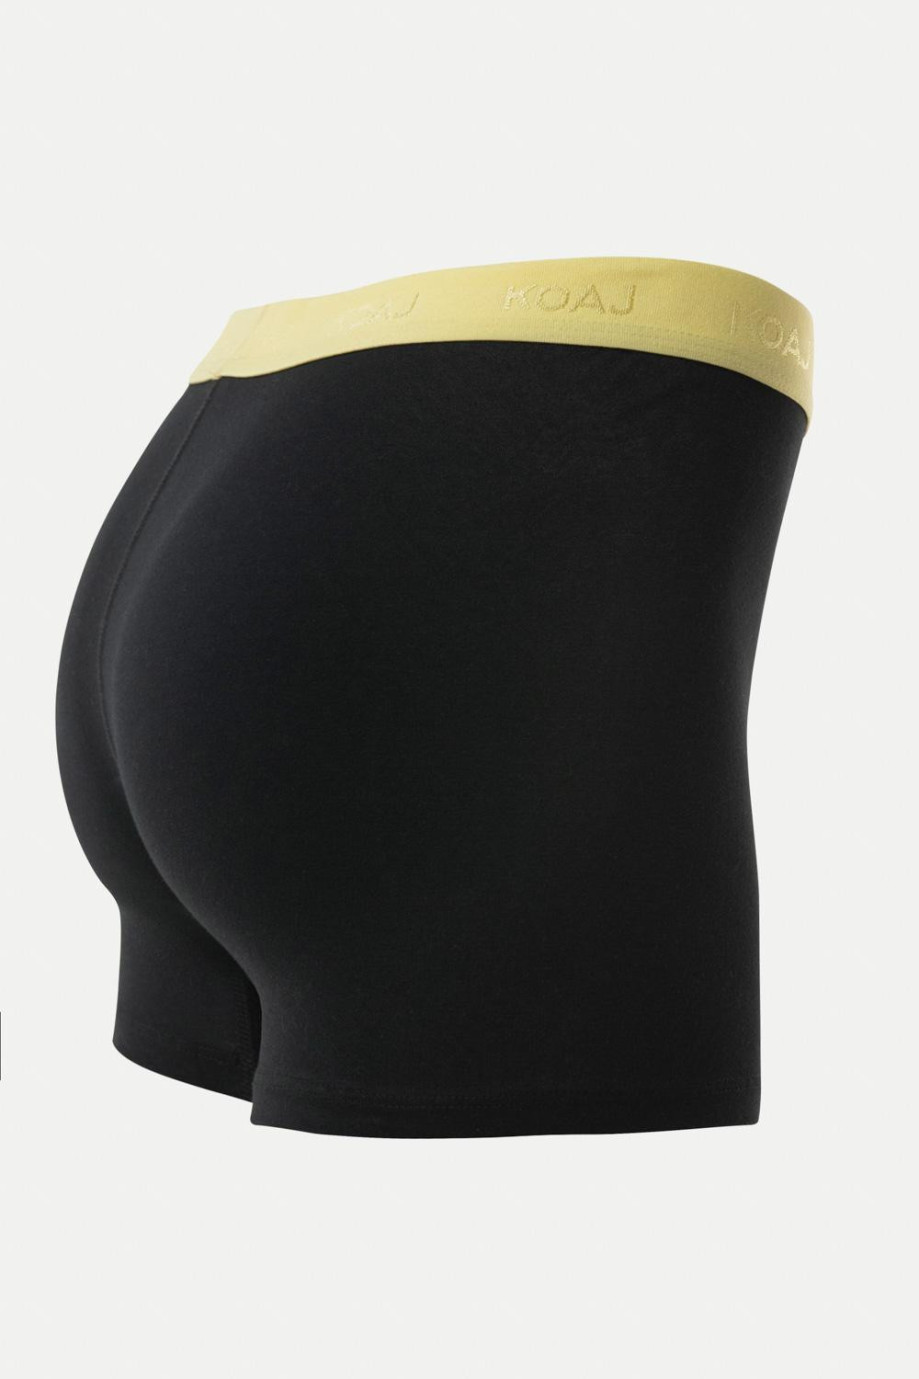 Bóxer negro tipo midway brief con elástico amarillo en la cintura